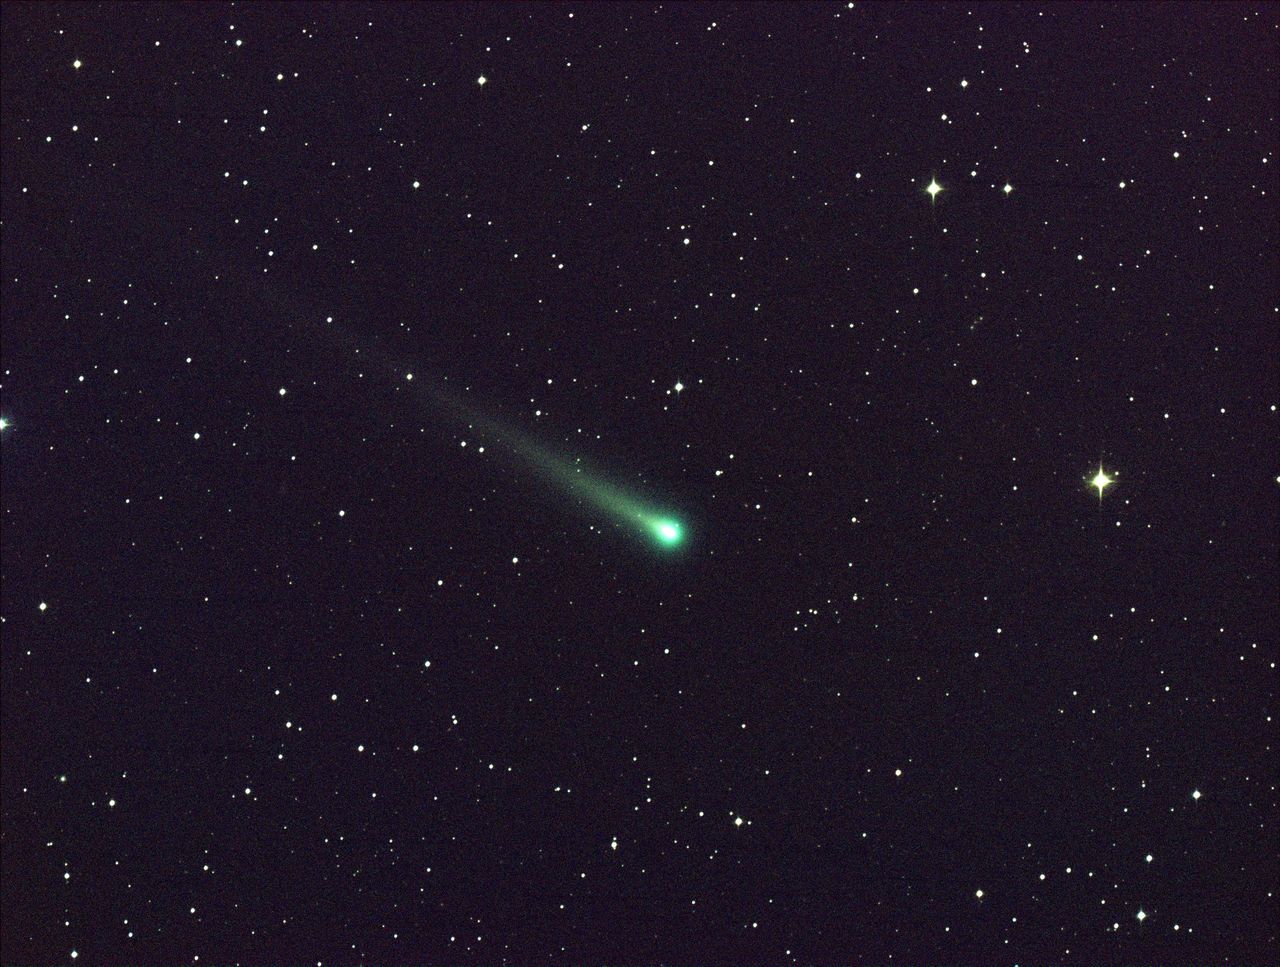 Kometa 46P/Wirtanen